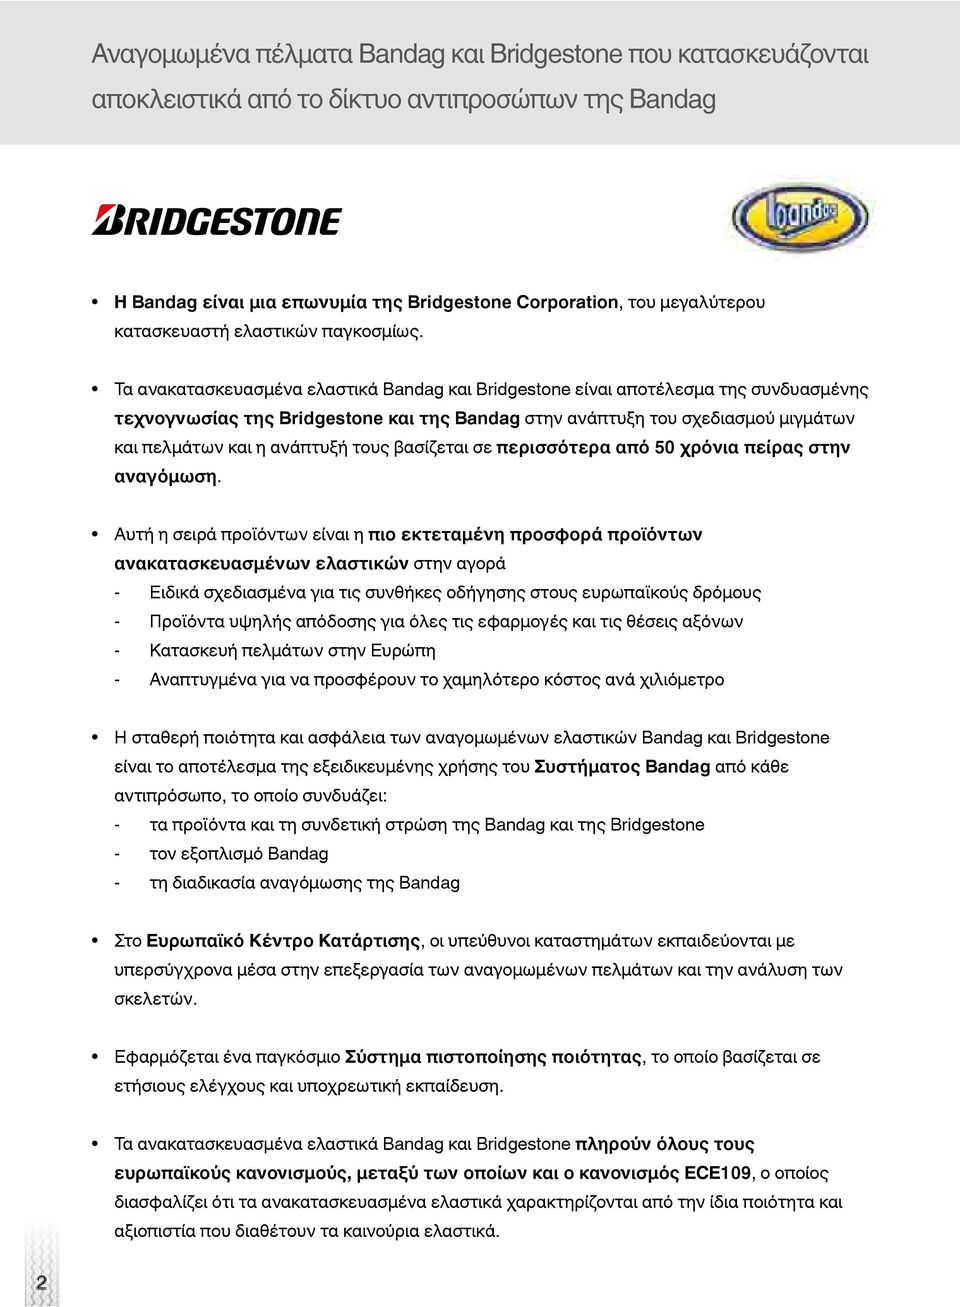 Τα ανακατασκευασμένα ελαστικά Bandag και Bridgestone είναι αποτέλεσμα της συνδυασμένης τεχνογνωσίας της Bridgestone και της Bandag στην ανάπτυξη του σχεδιασμού μιγμάτων και πελμάτων και η ανάπτυξή